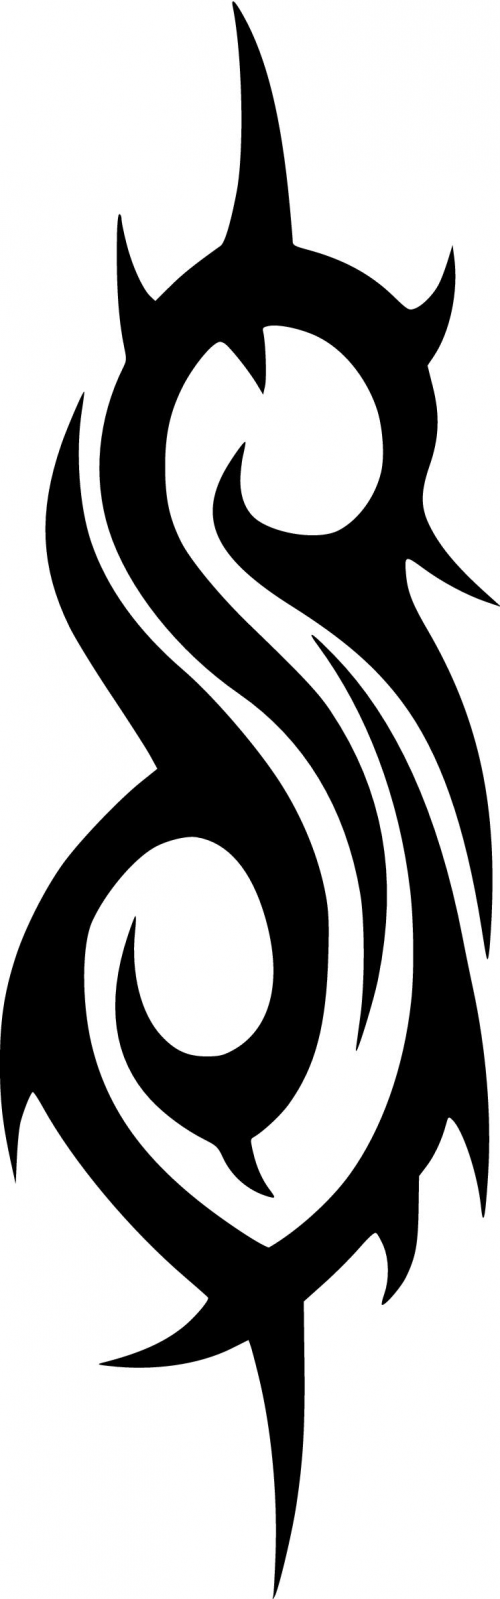 Slipknot Logo - Slipknot logo